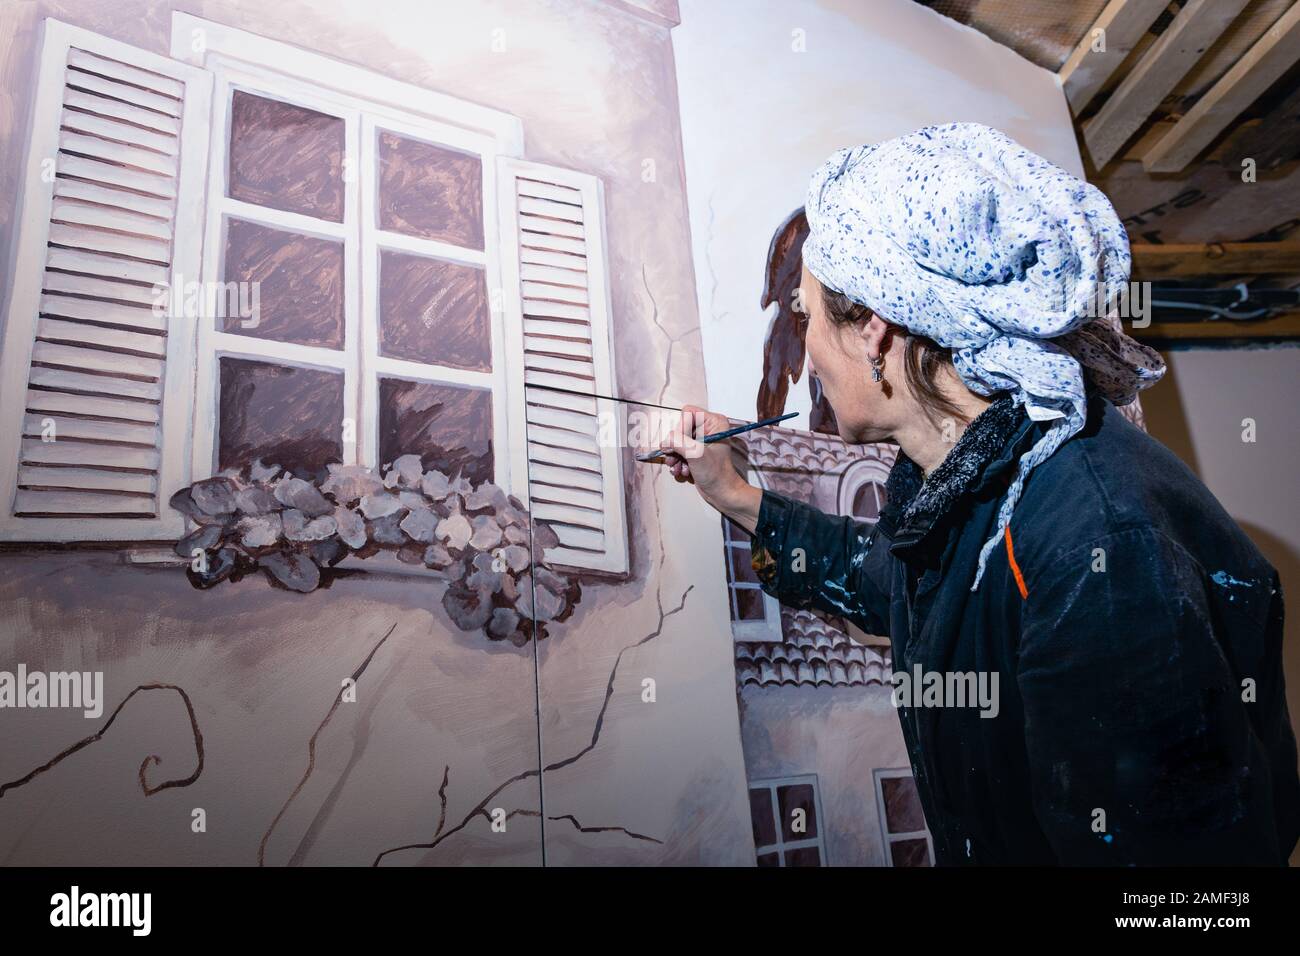 Frauenkünstlerin malt eine Wand in einem Wohnzimmer. Das Wandbild widmet sich den Eindrücken von Paris. Der Autor zeichnet ein Detail - Fensterläden. Rückansicht. Stockfoto